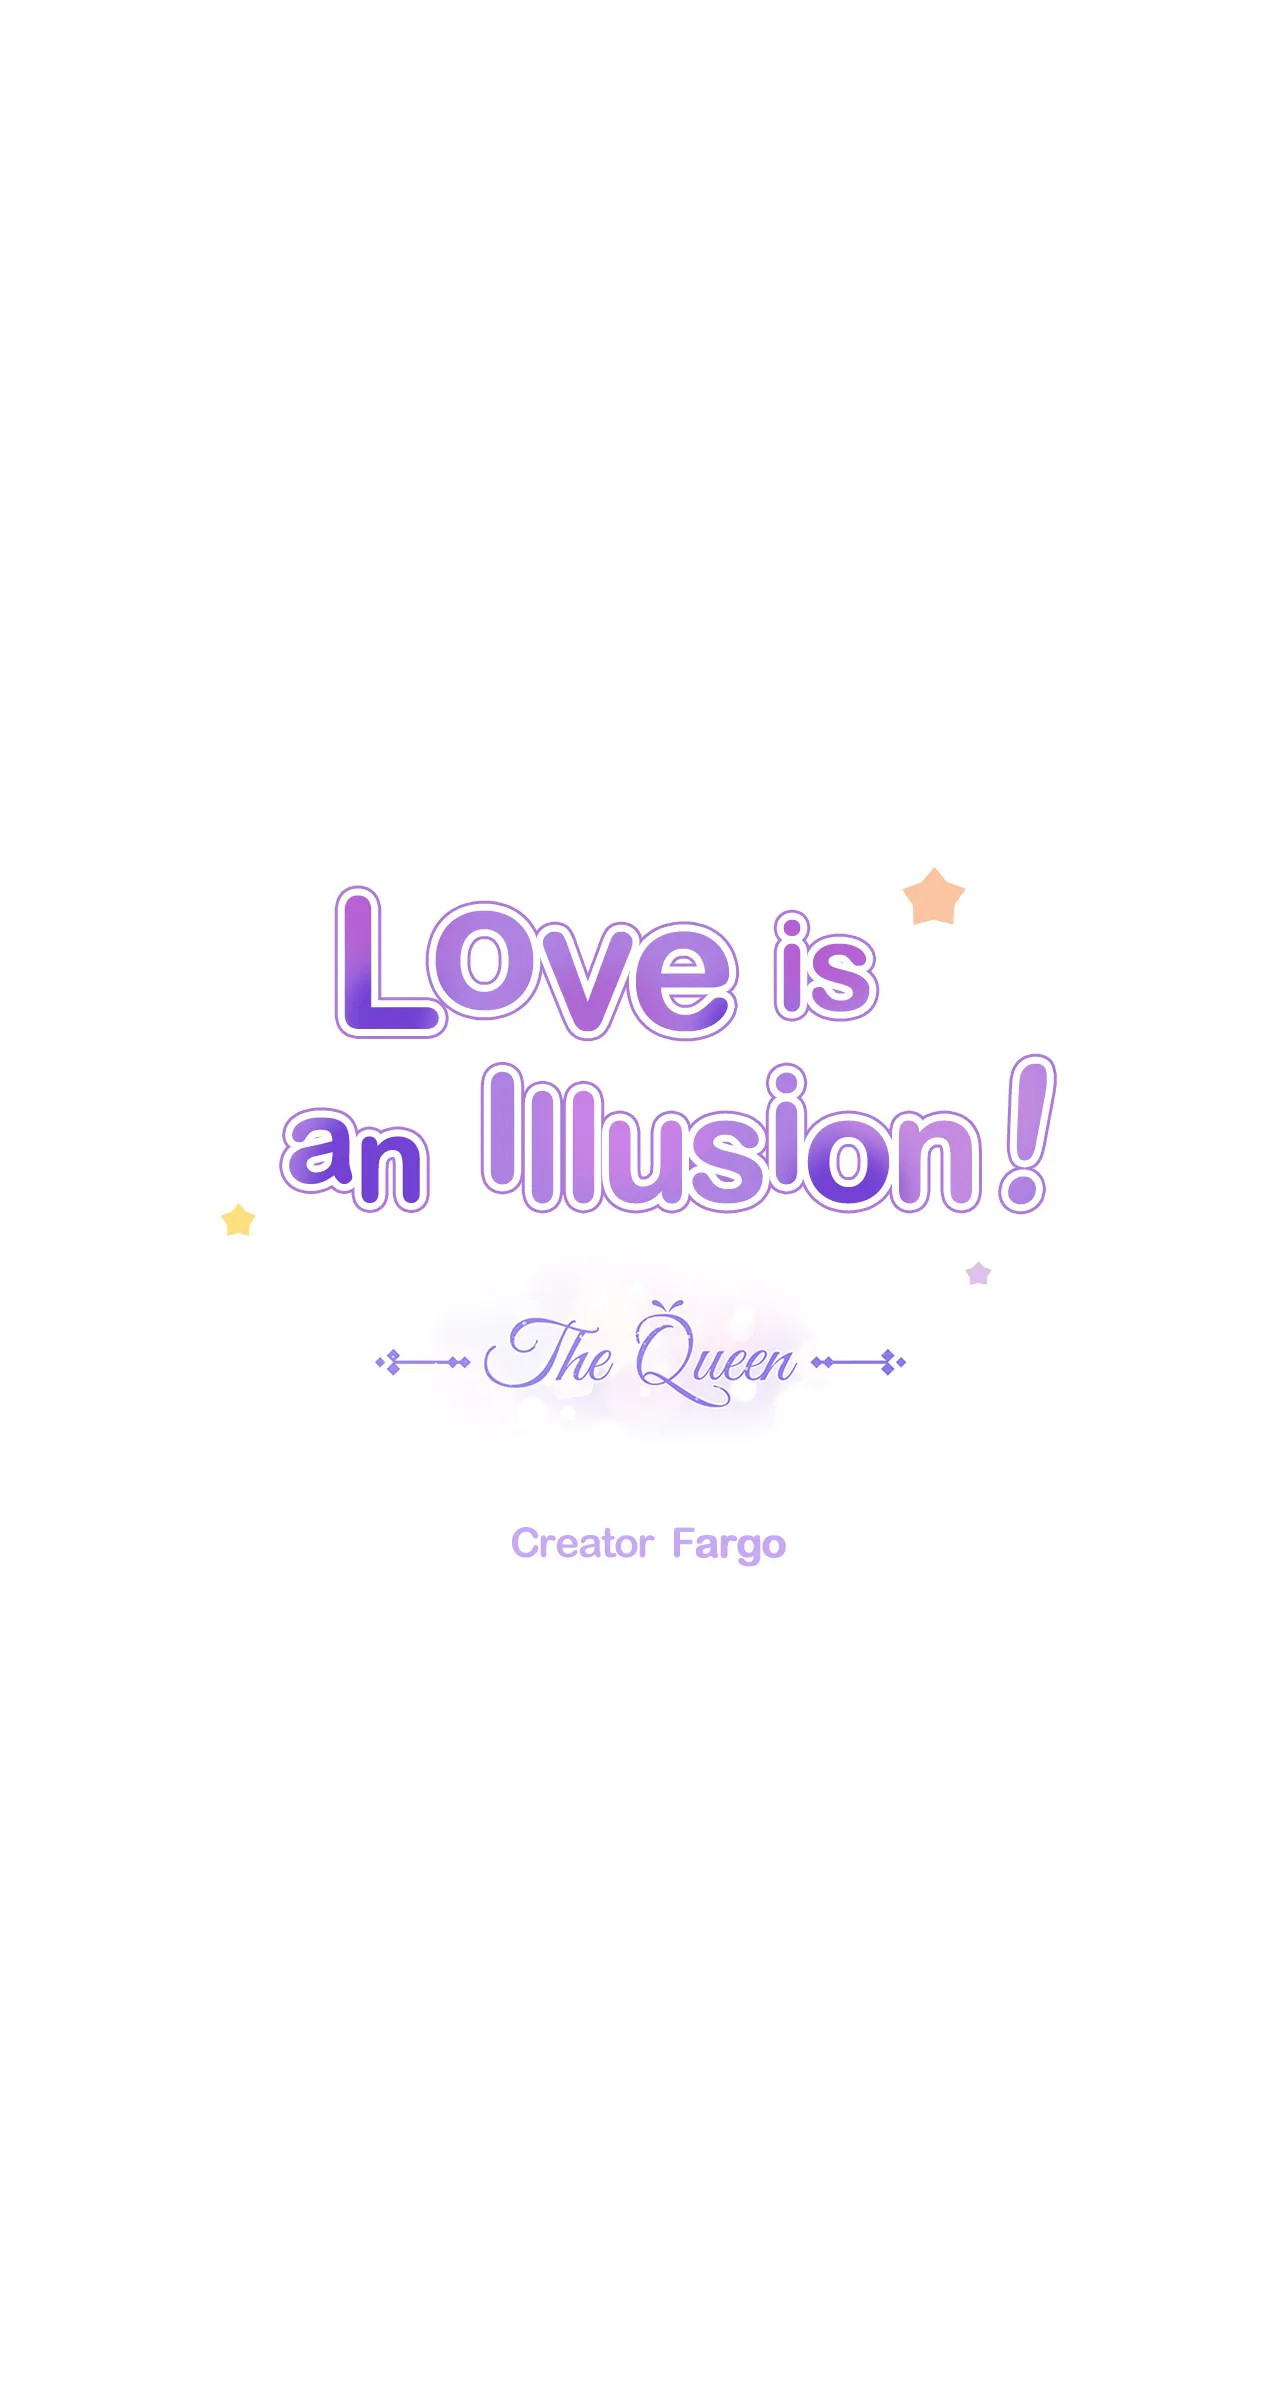 Tình yêu là ảo ảnh - Illusion Love